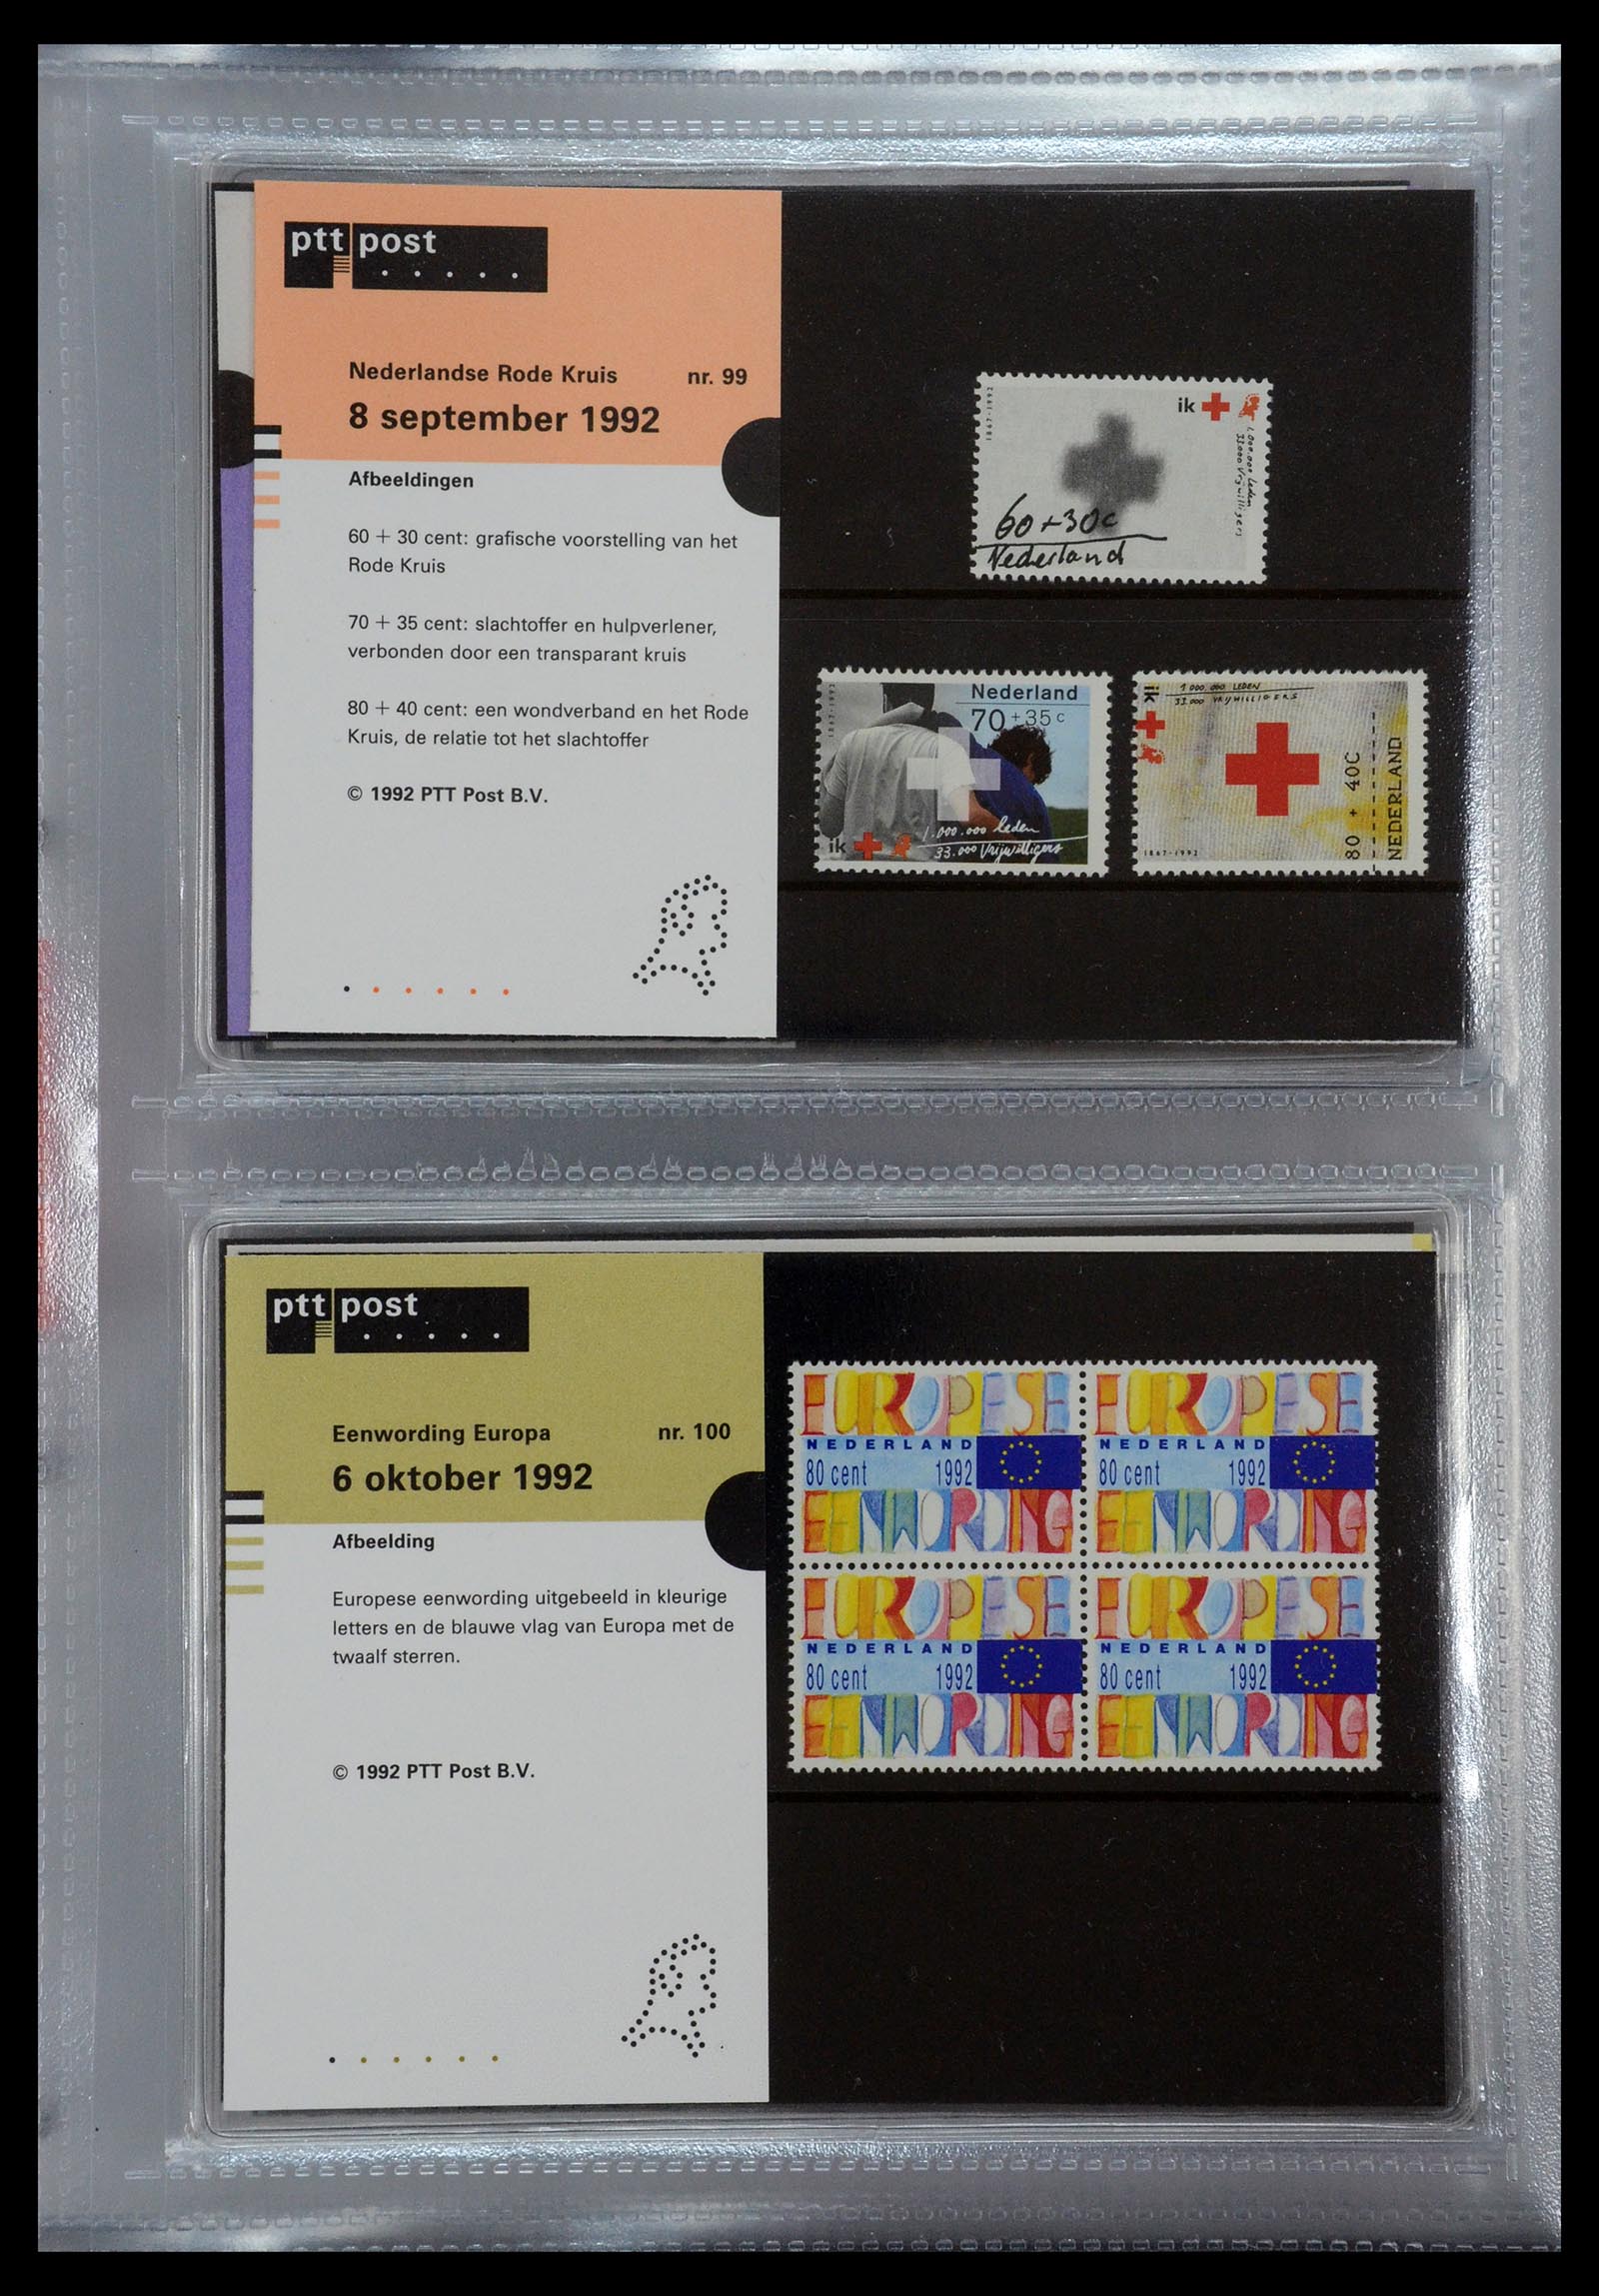 35144 051 - Stamp Collection 35144 Netherlands PTT presentation packs 1982-2021!